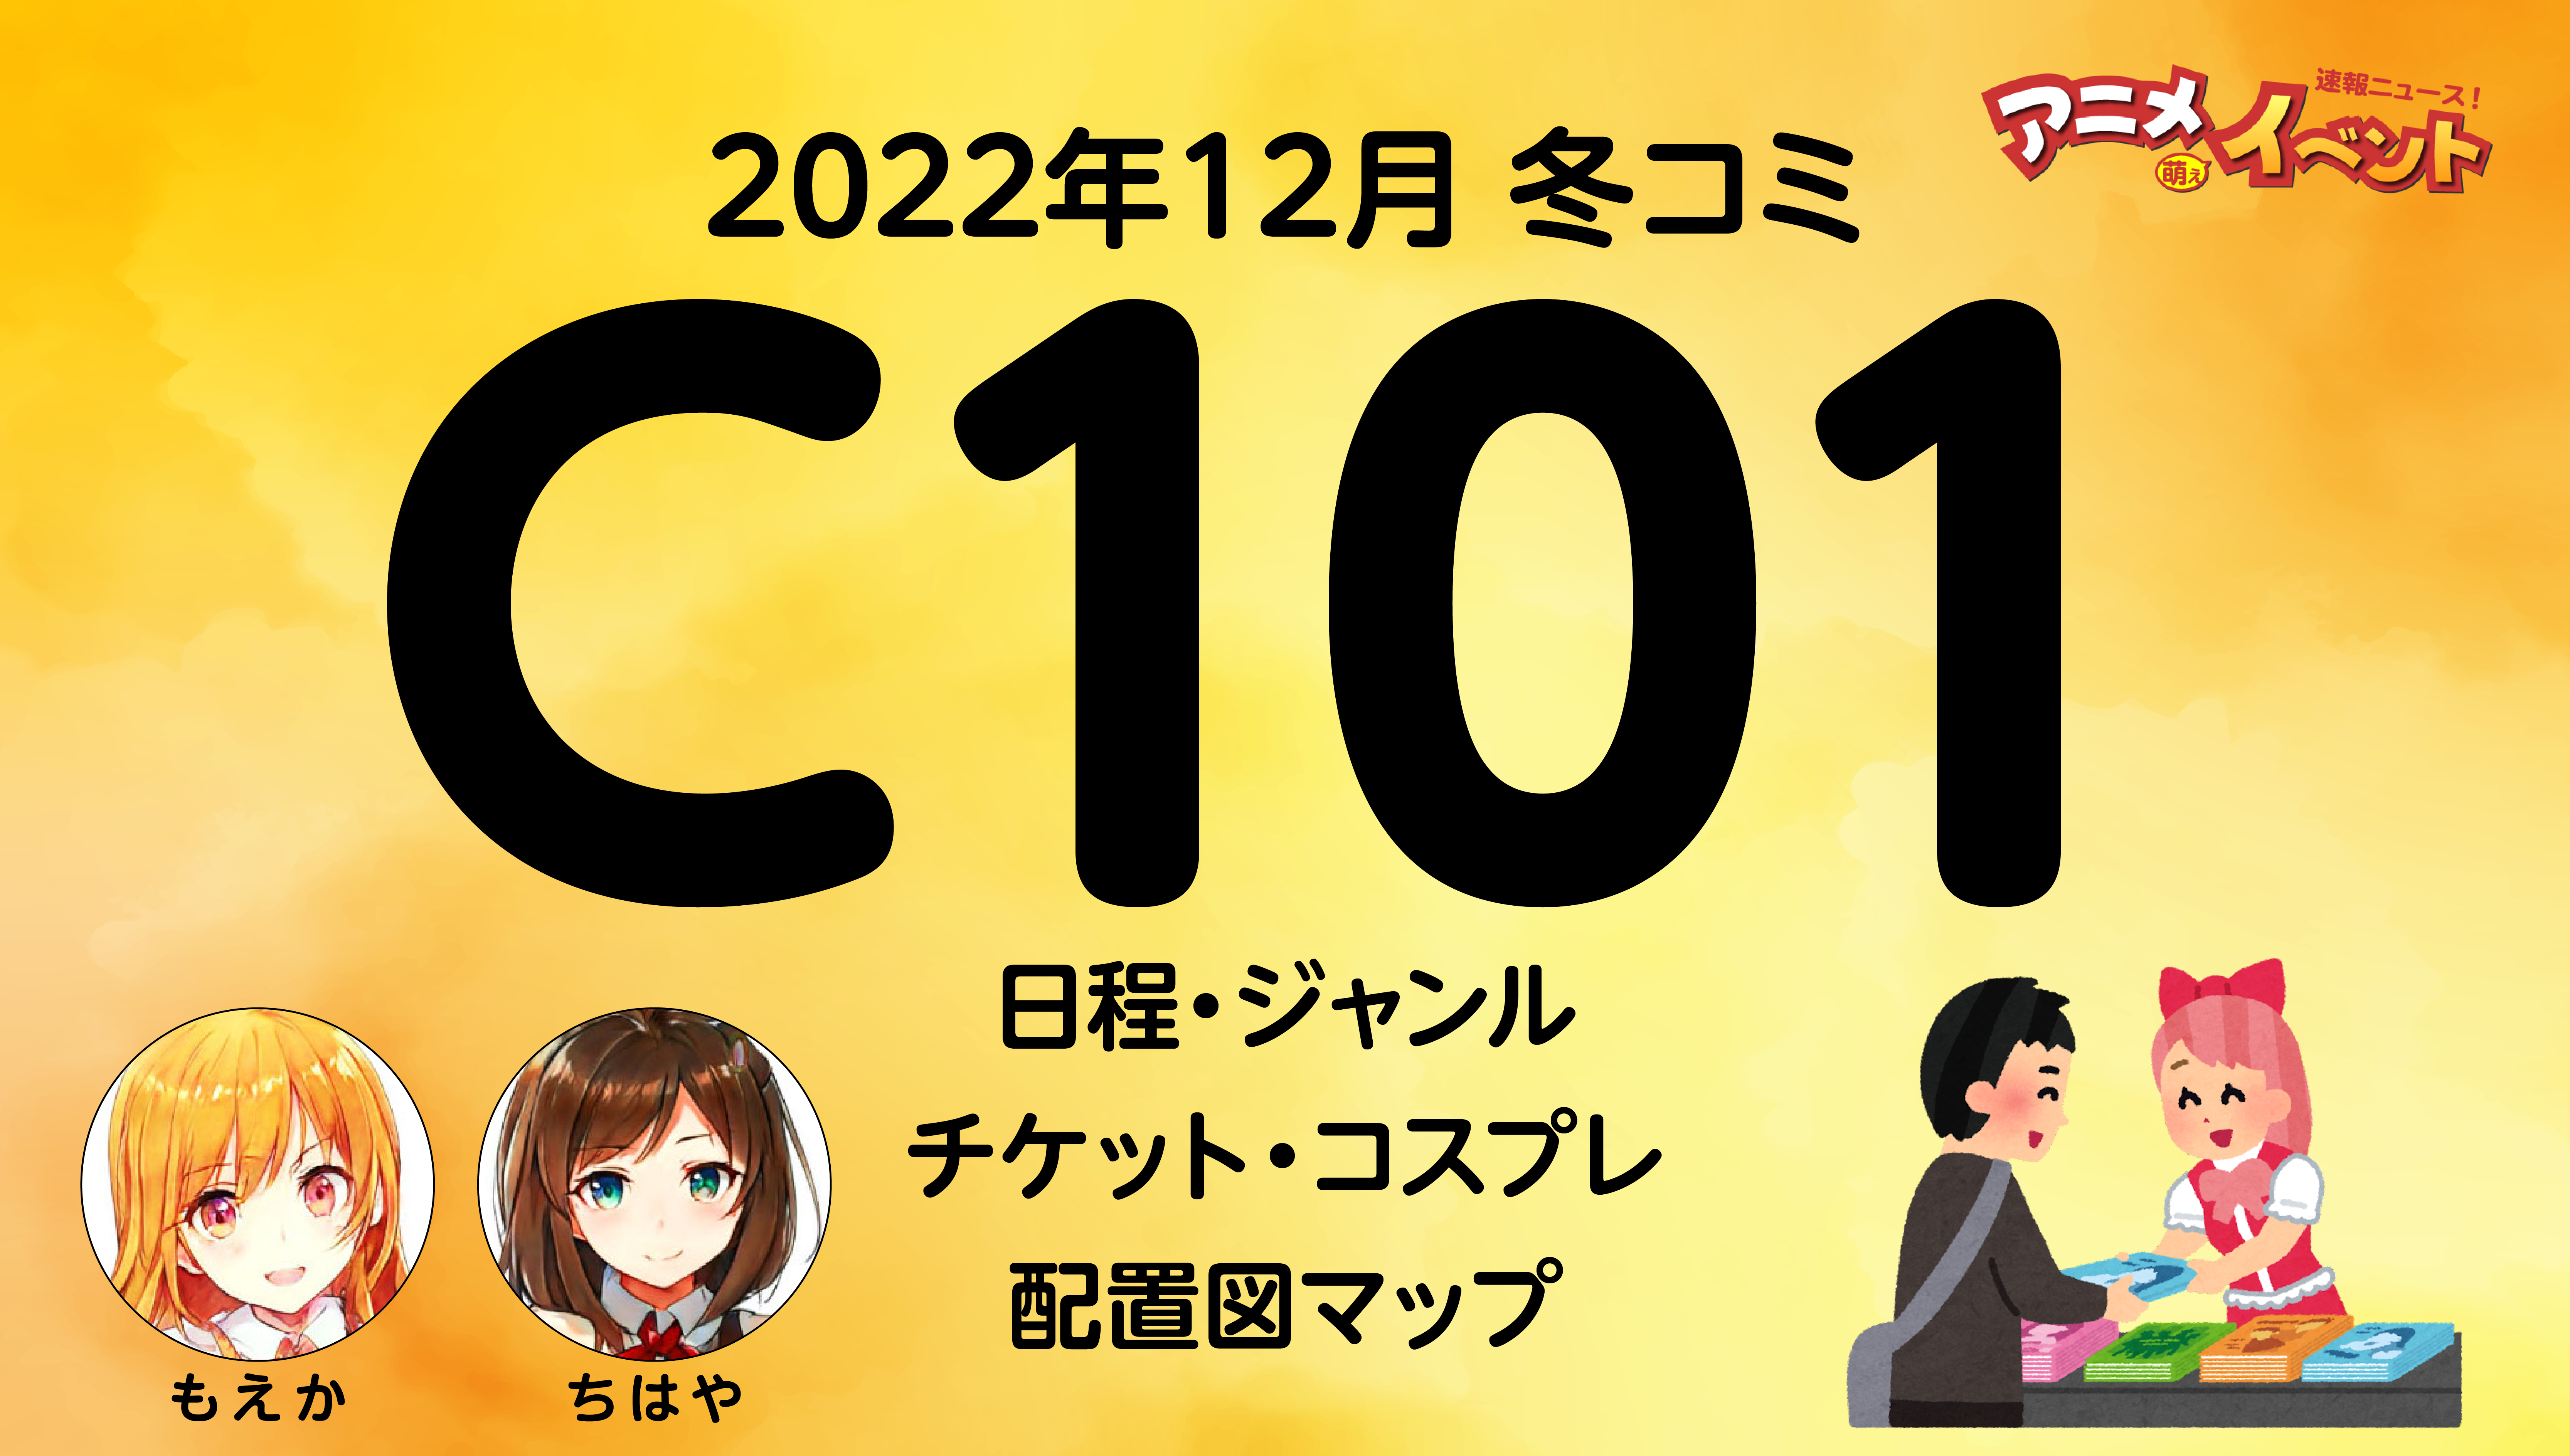 コミケ　c101 2日目 コミックマーケット サークルチケット サクチケ 12月